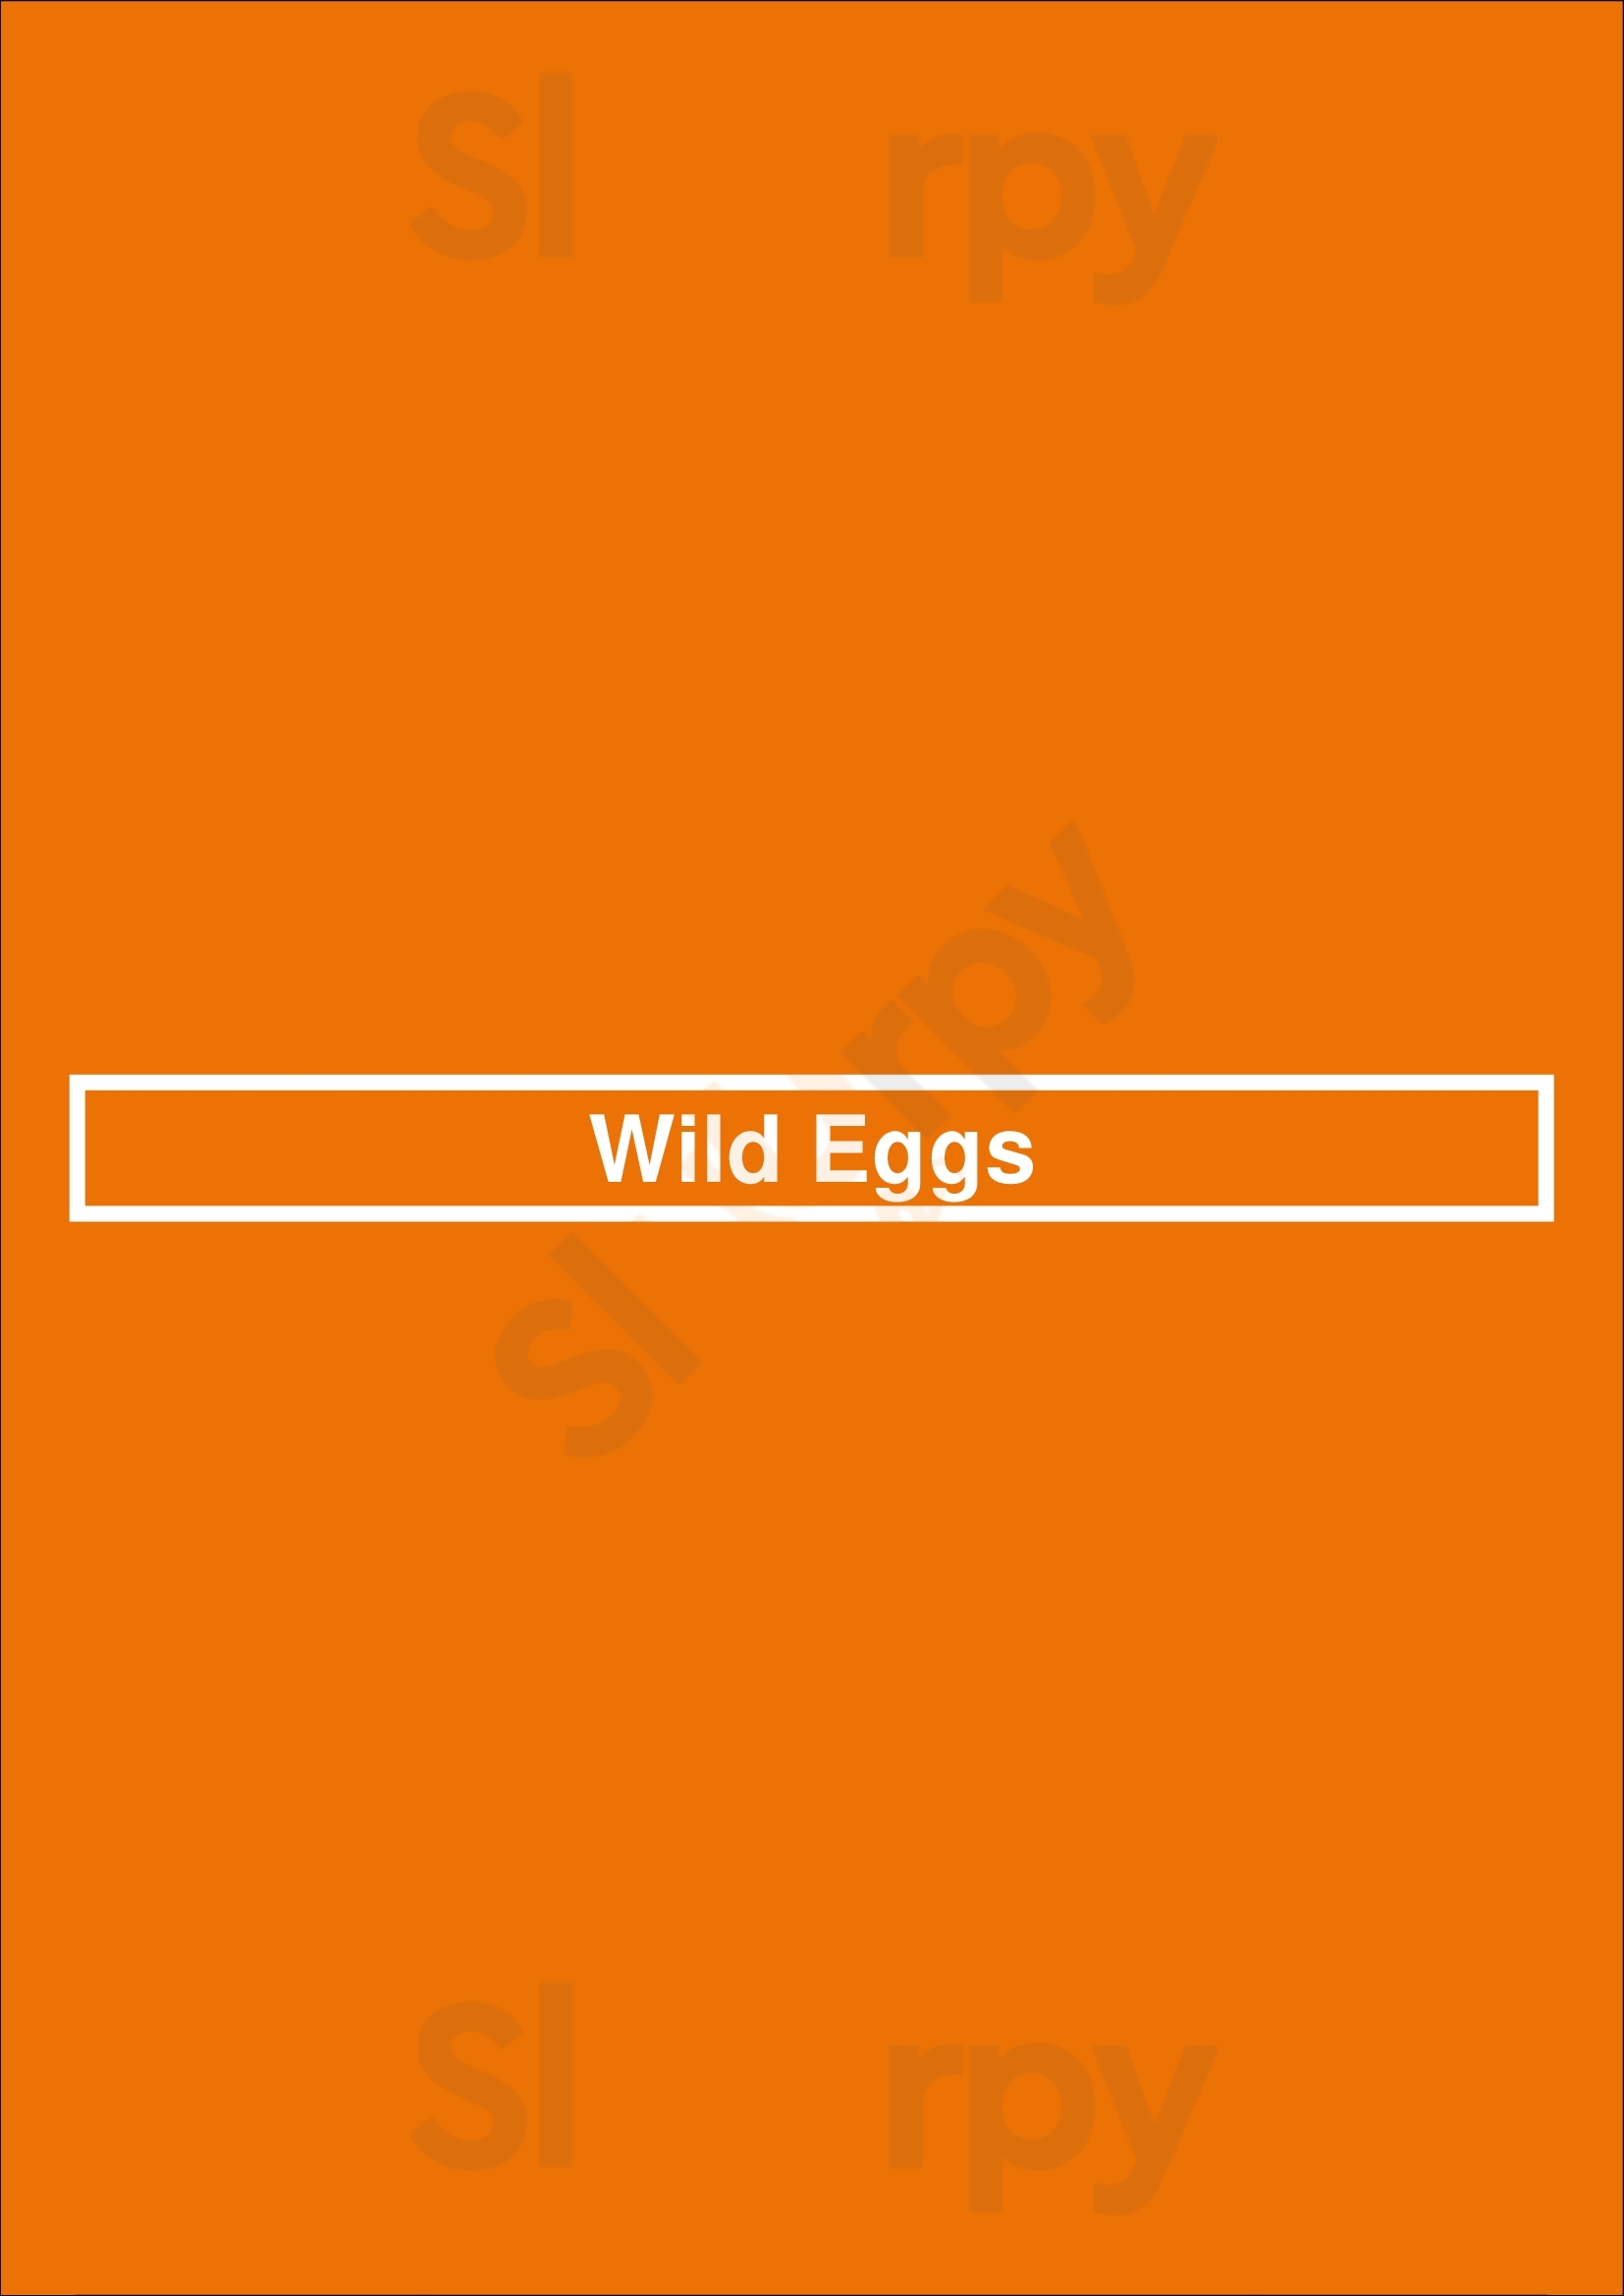 Wild Eggs Cincinnati Menu - 1